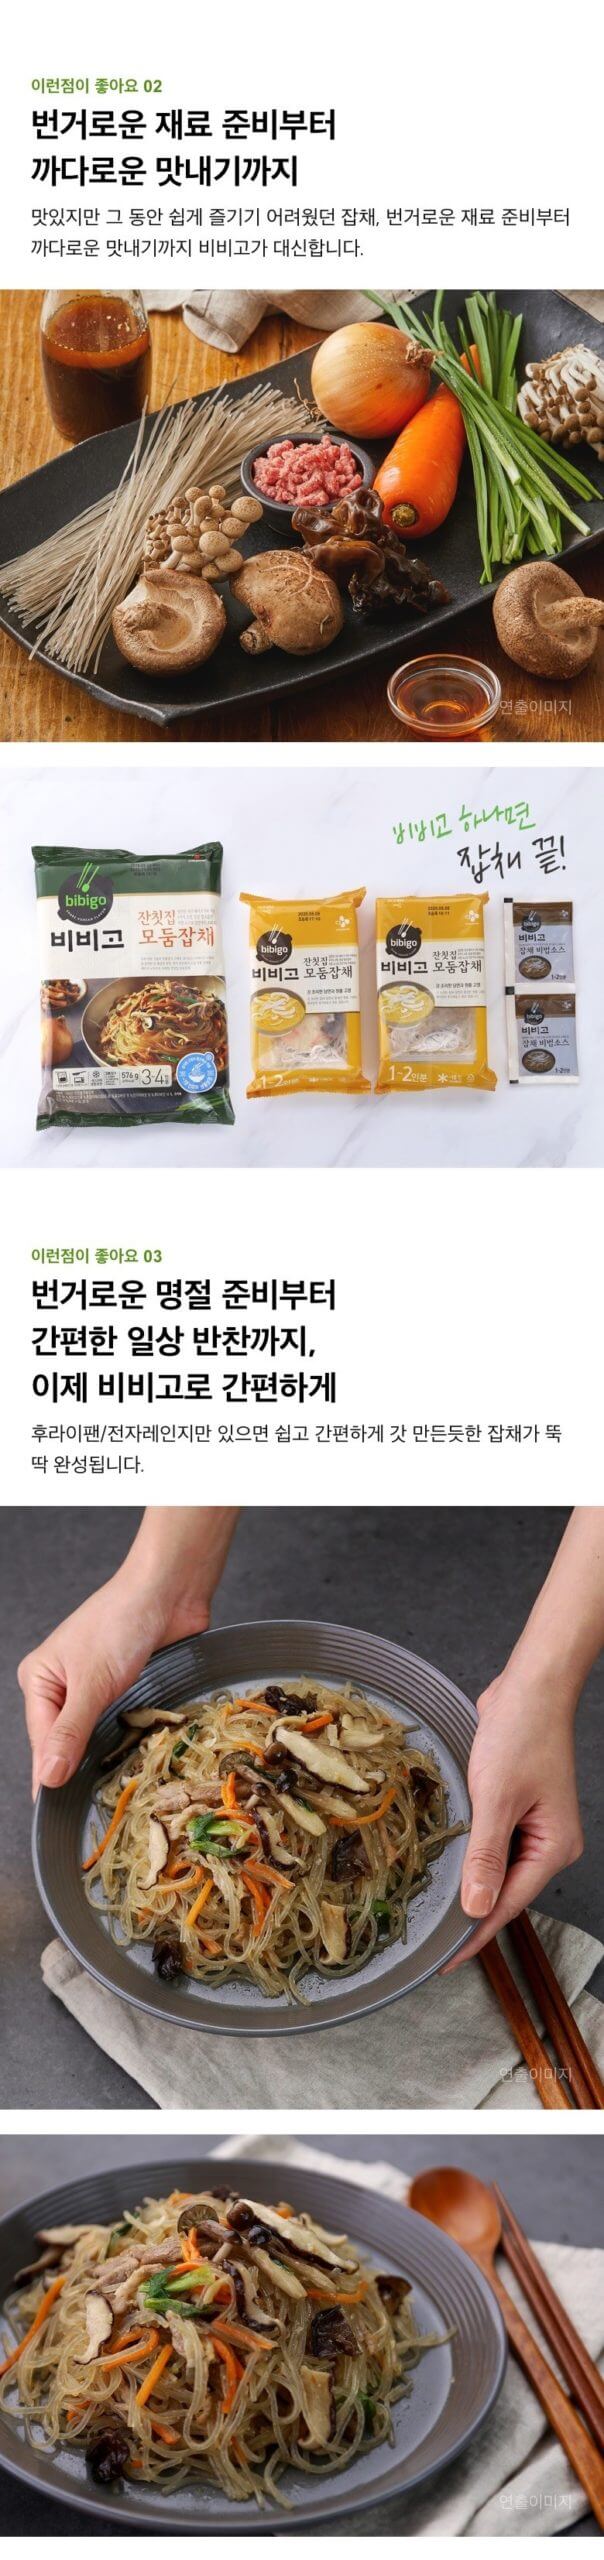 韓國食品-[CJ] 비비고 잔칫집 모둠잡채 644g